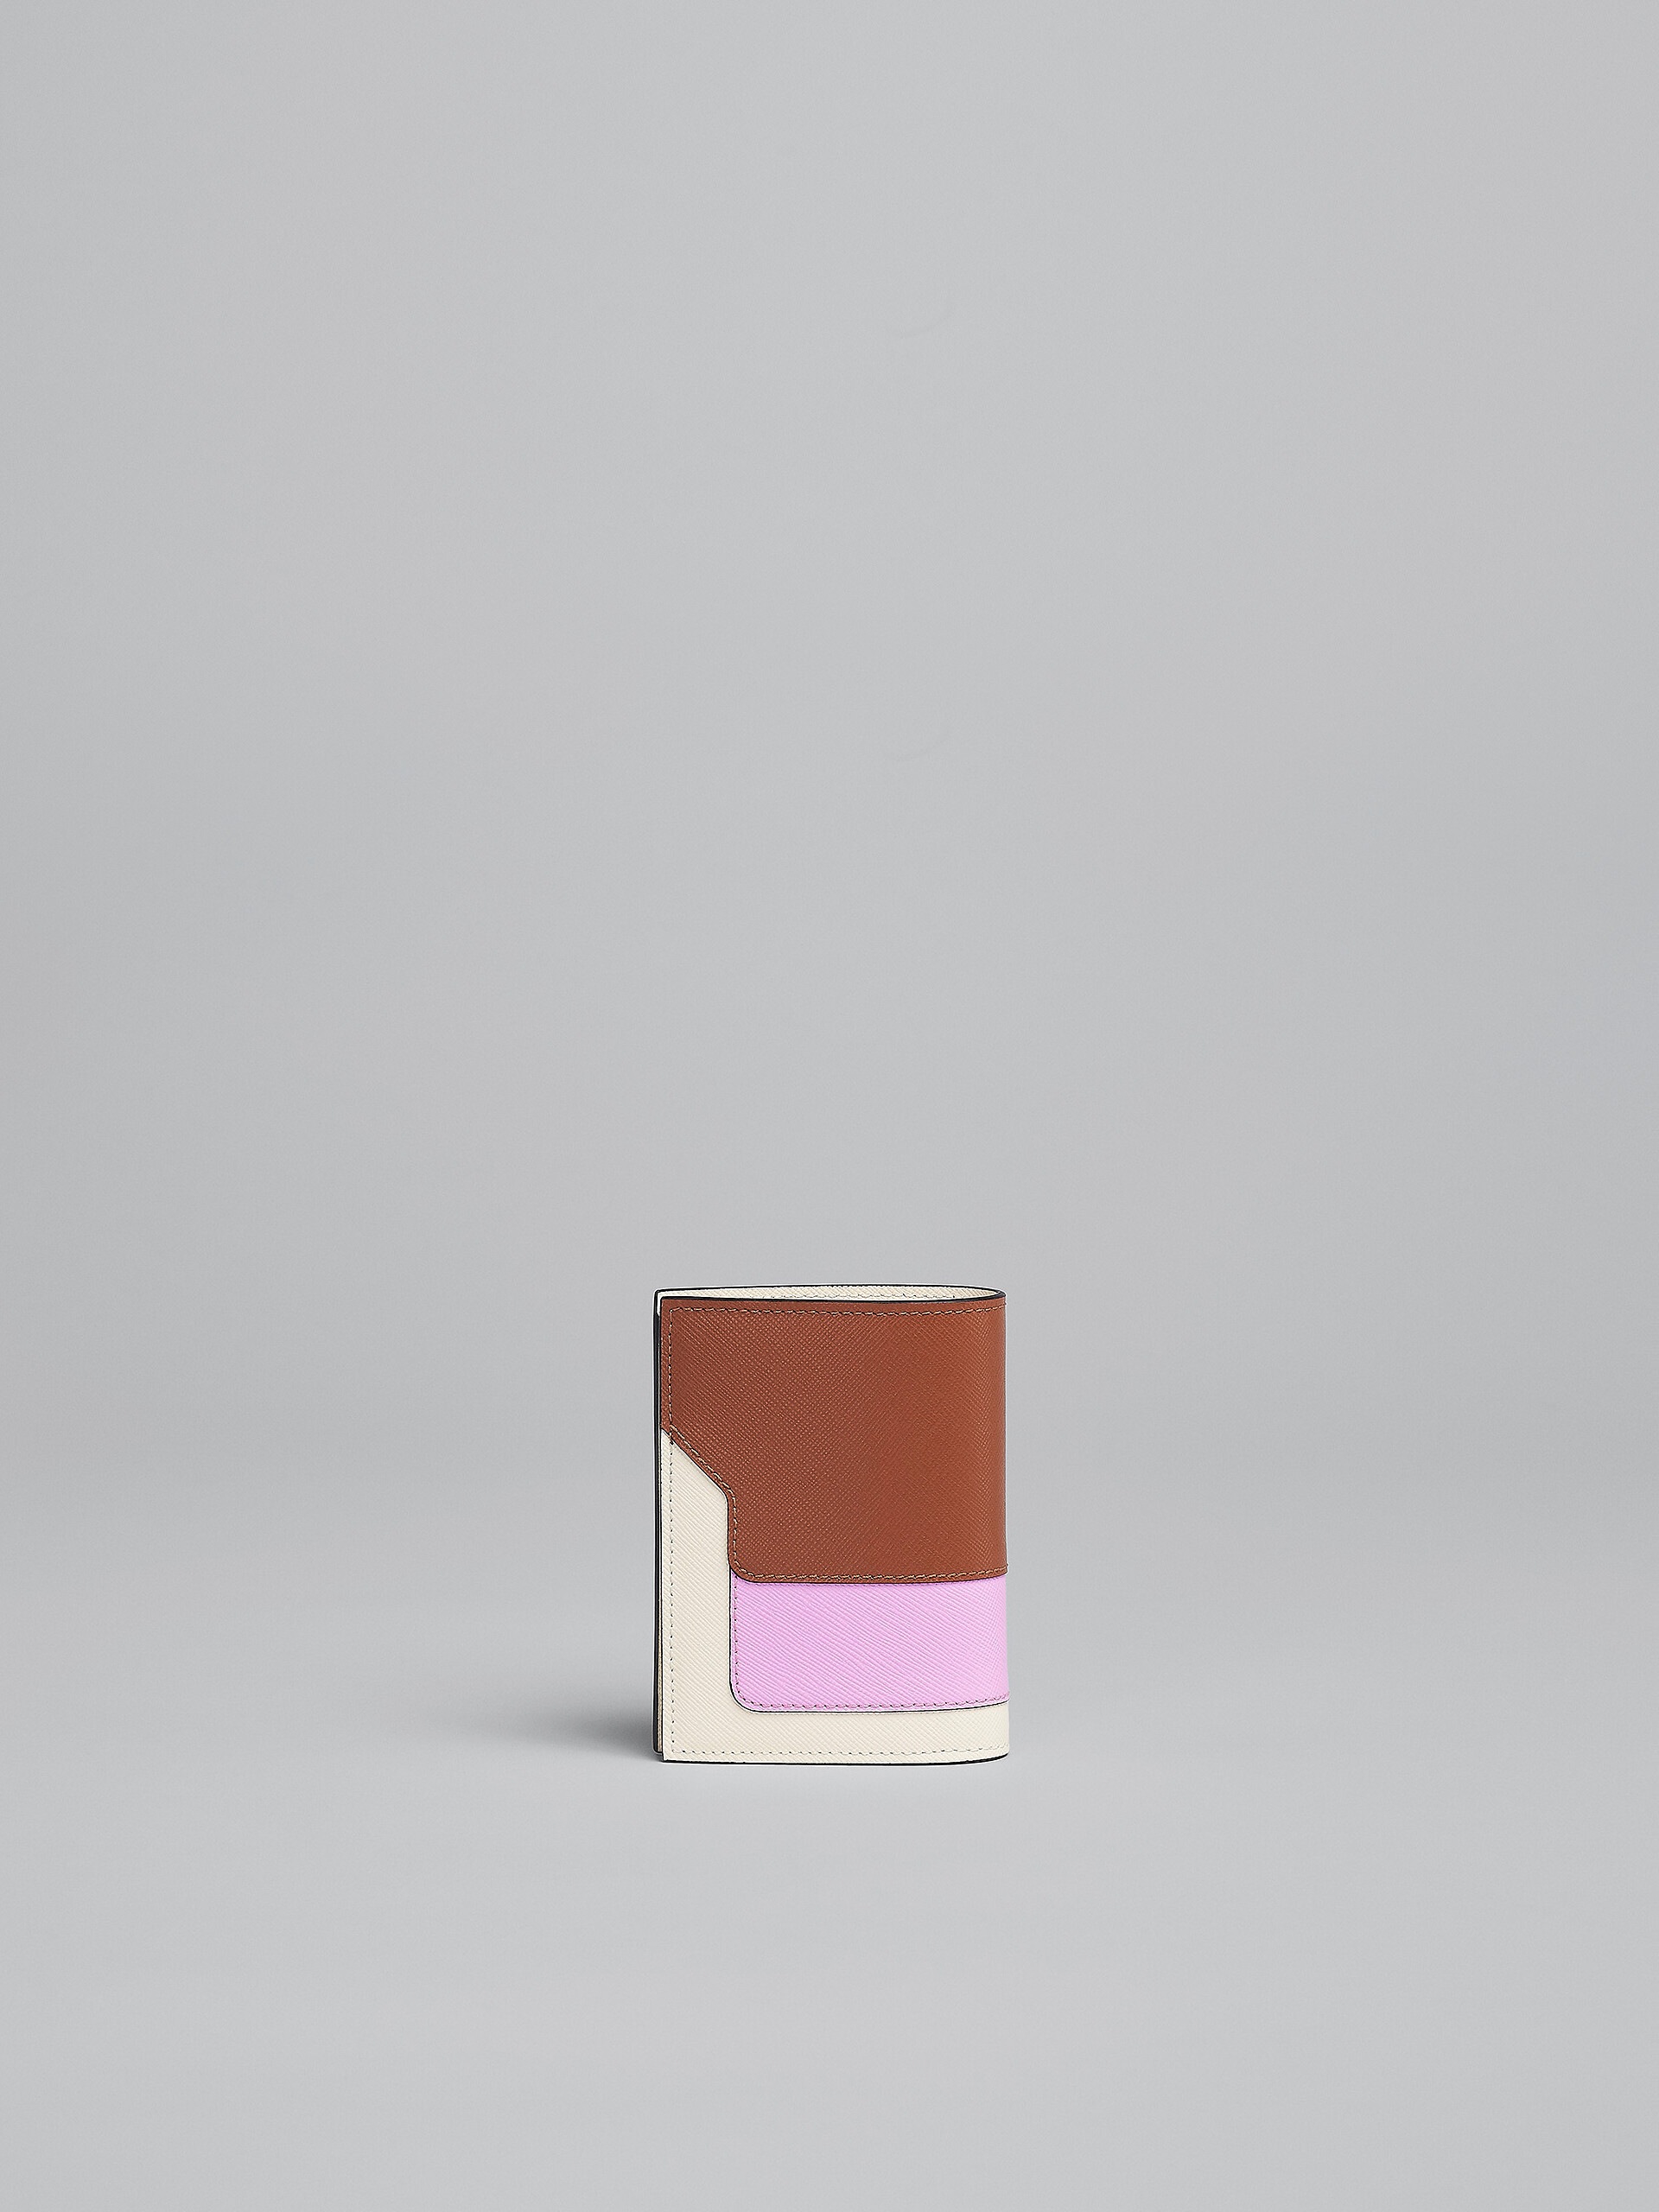 Portafoglio bi-fold in saffiano marrone rosa e bianco - Portafogli - Image 3